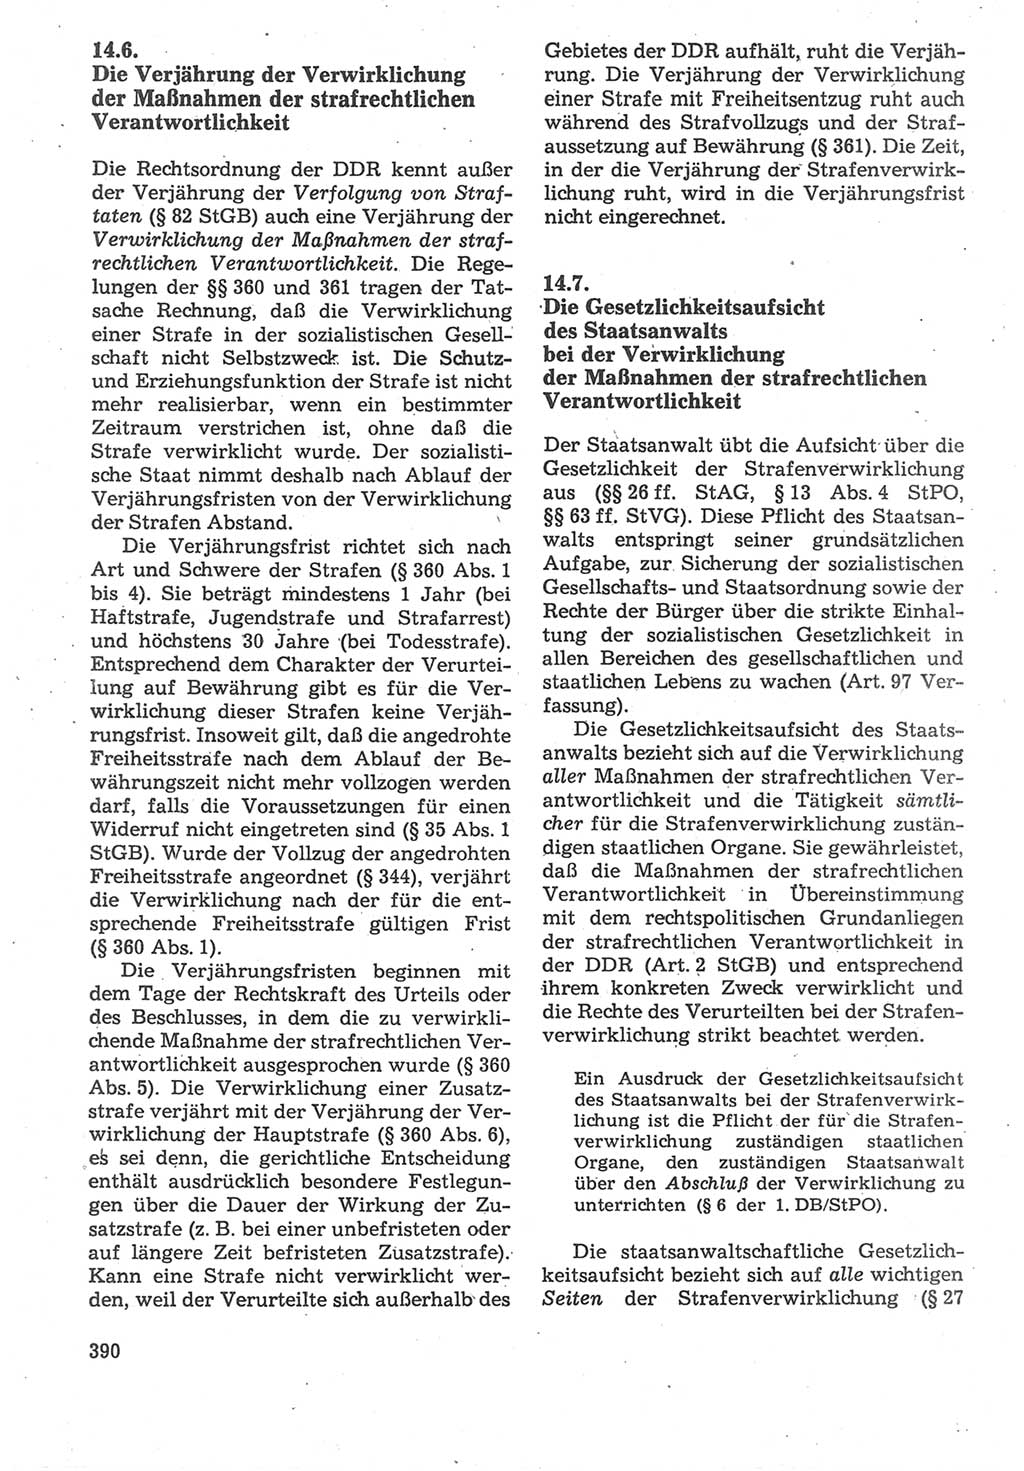 Strafverfahrensrecht [Deutsche Demokratische Republik (DDR)], Lehrbuch 1987, Seite 390 (Strafverf.-R. DDR Lb. 1987, S. 390)